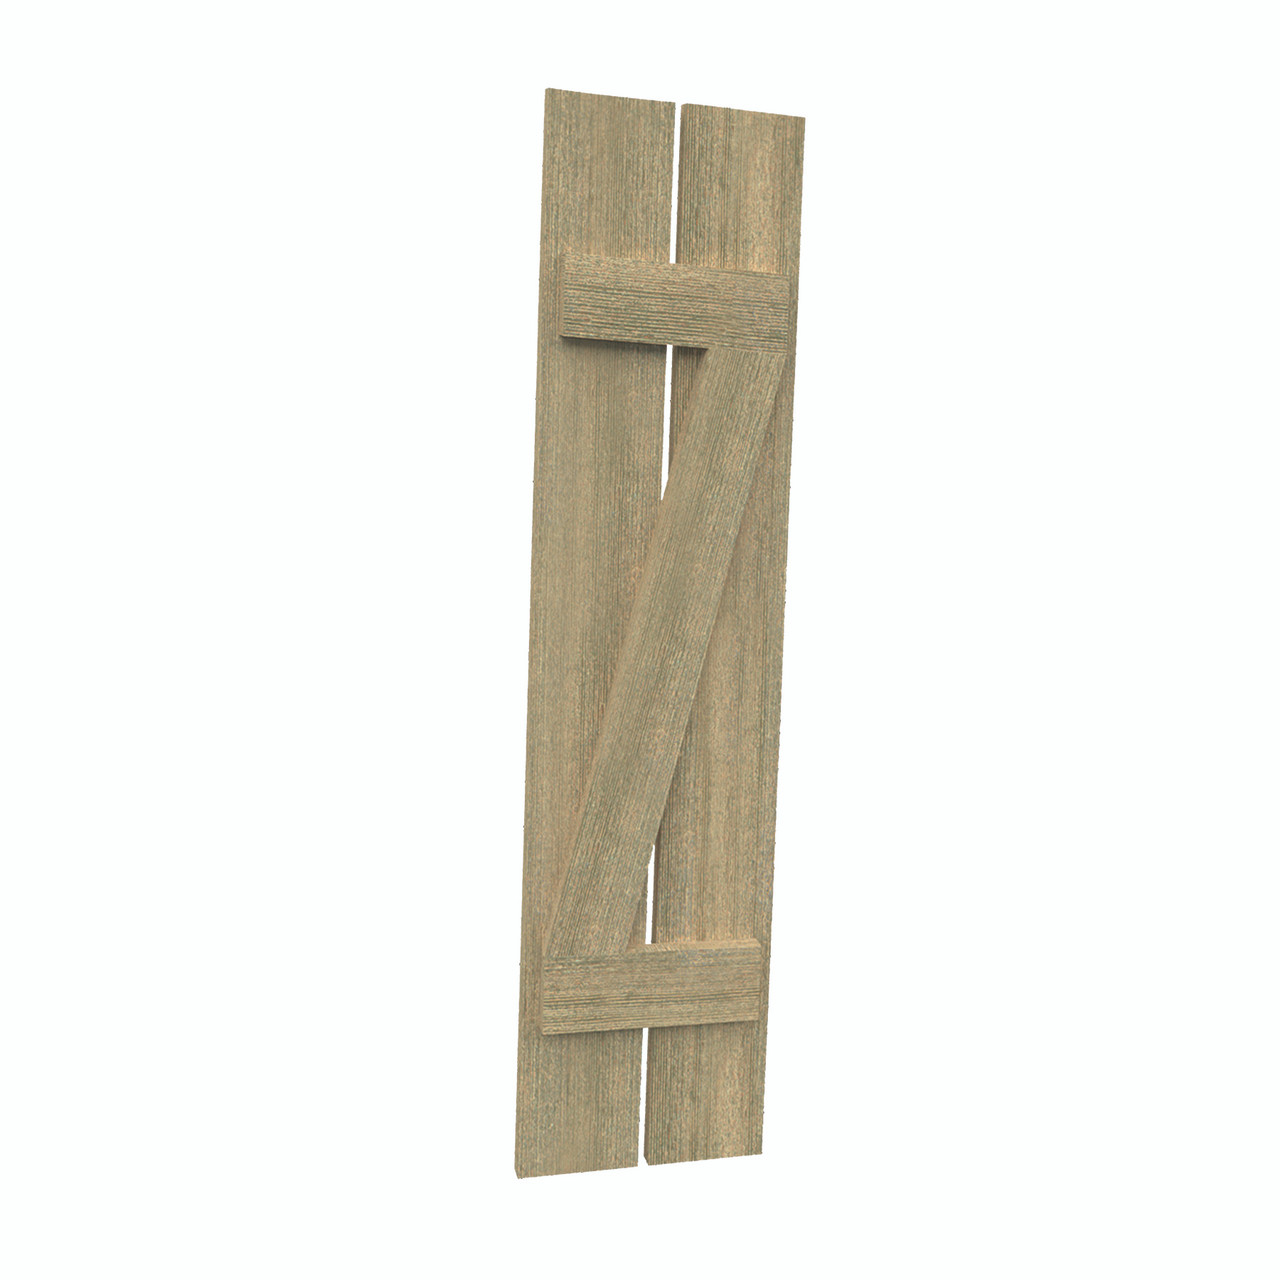 12 inch by 82 inch Plank Shutter with 2-Plank, Z-Batten